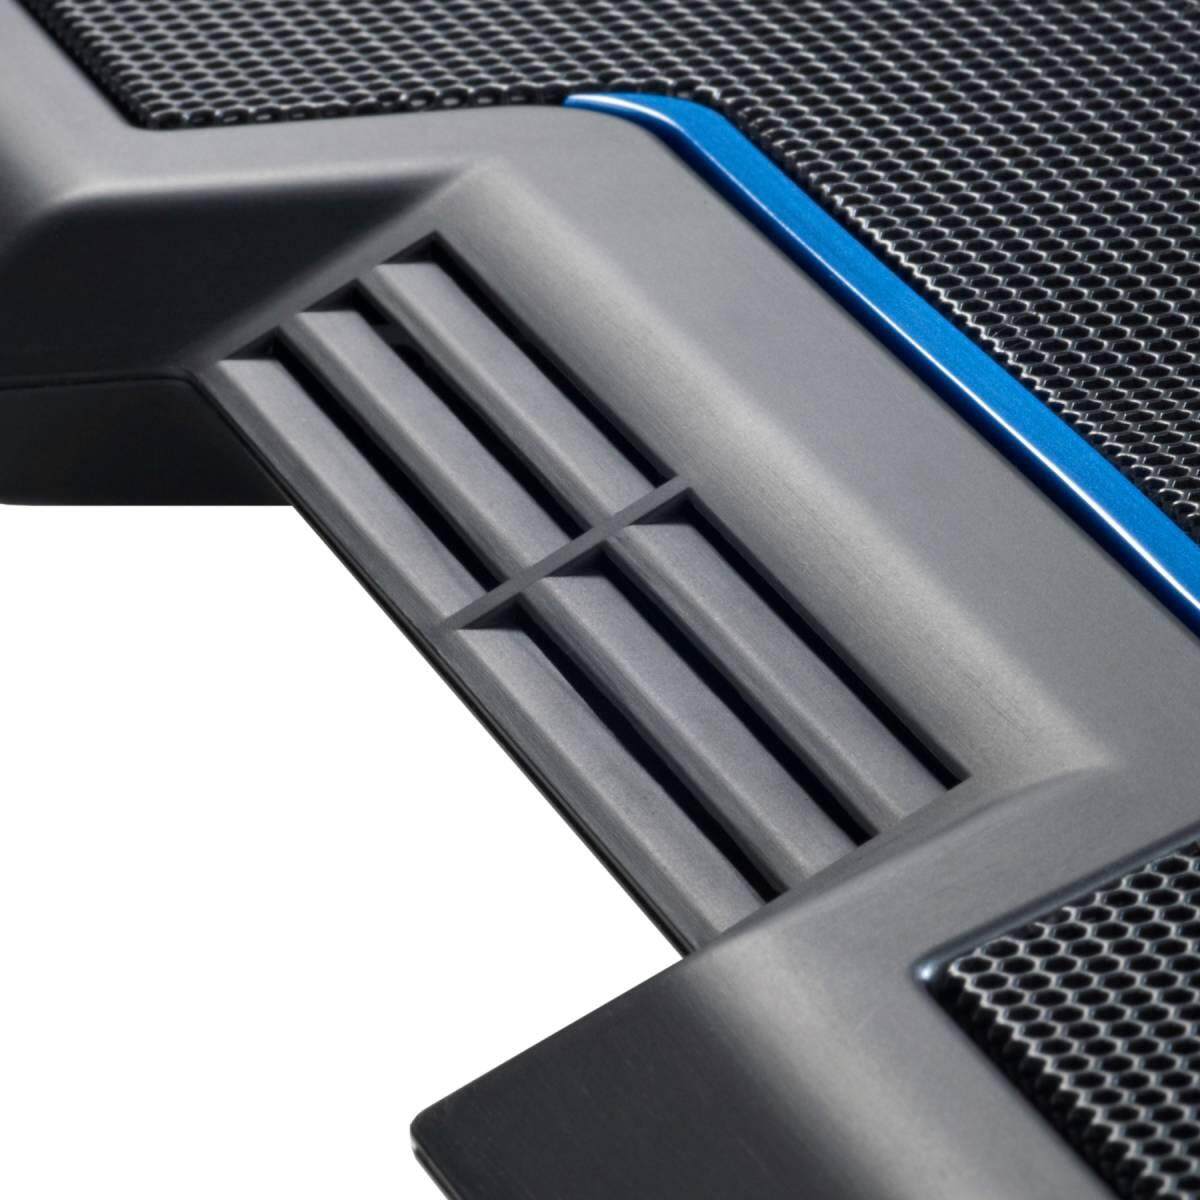 Cooler Master Notepal X3 200mm Silent Adjustable Blue LED Fan Ergonomic Mesh USB 2.0 Gaming Notebook Cooler for up to 17